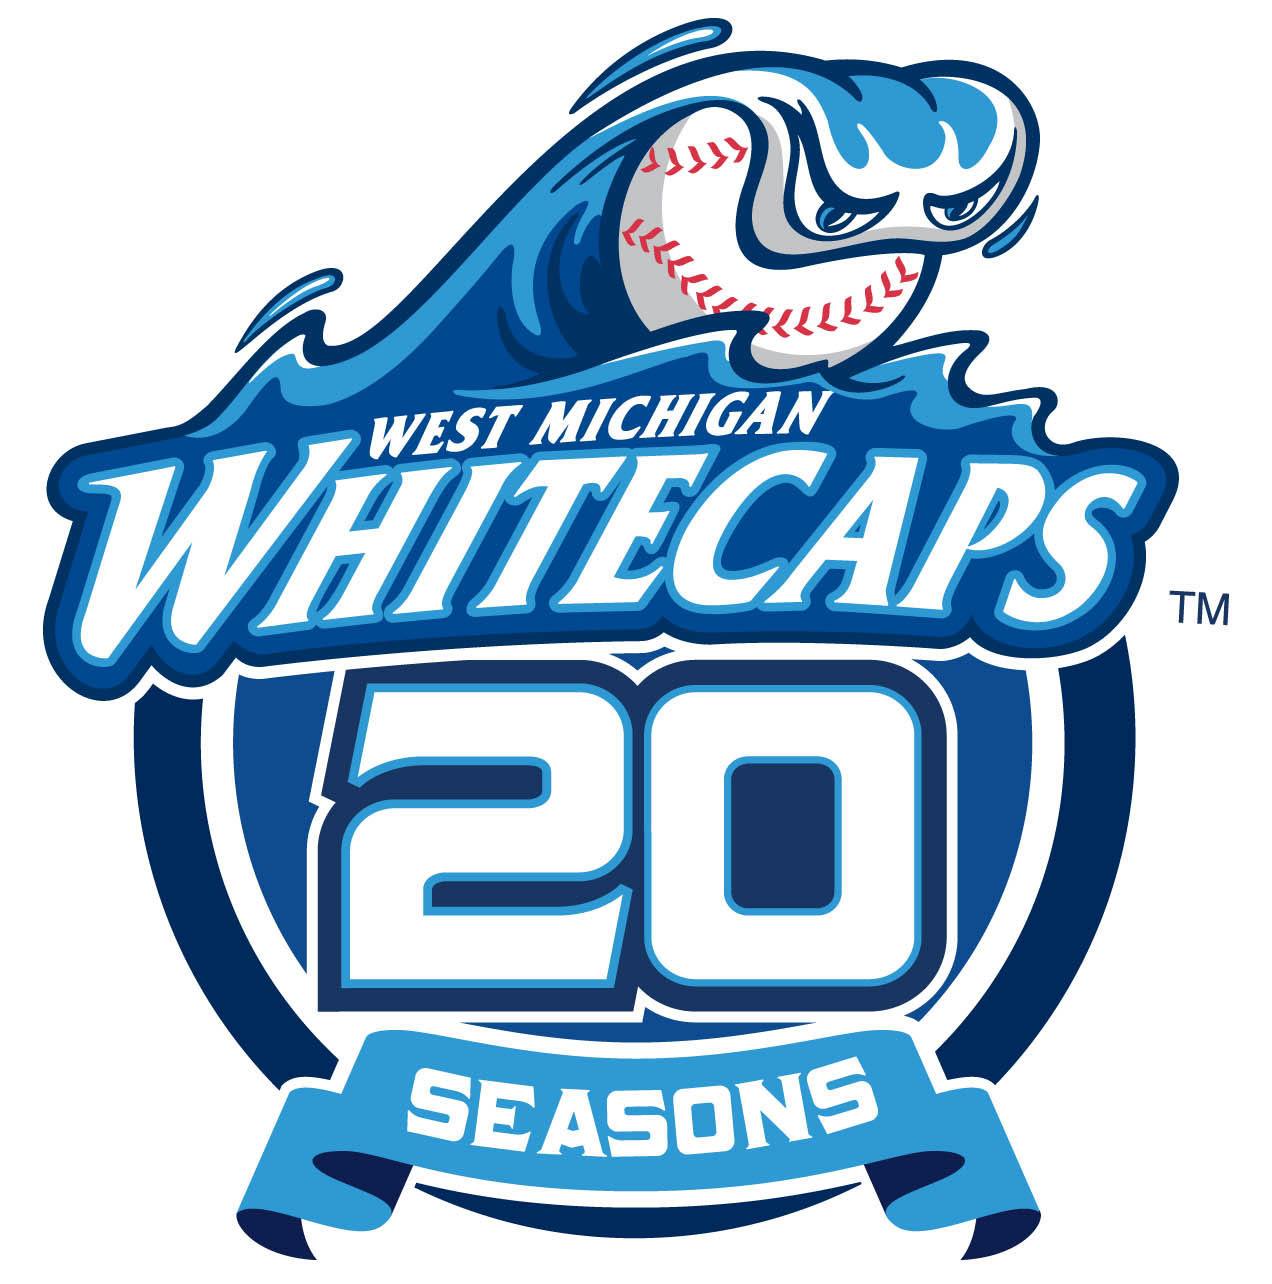 West Michigan Whitecaps 2013 anniversary logo iron on.jpg